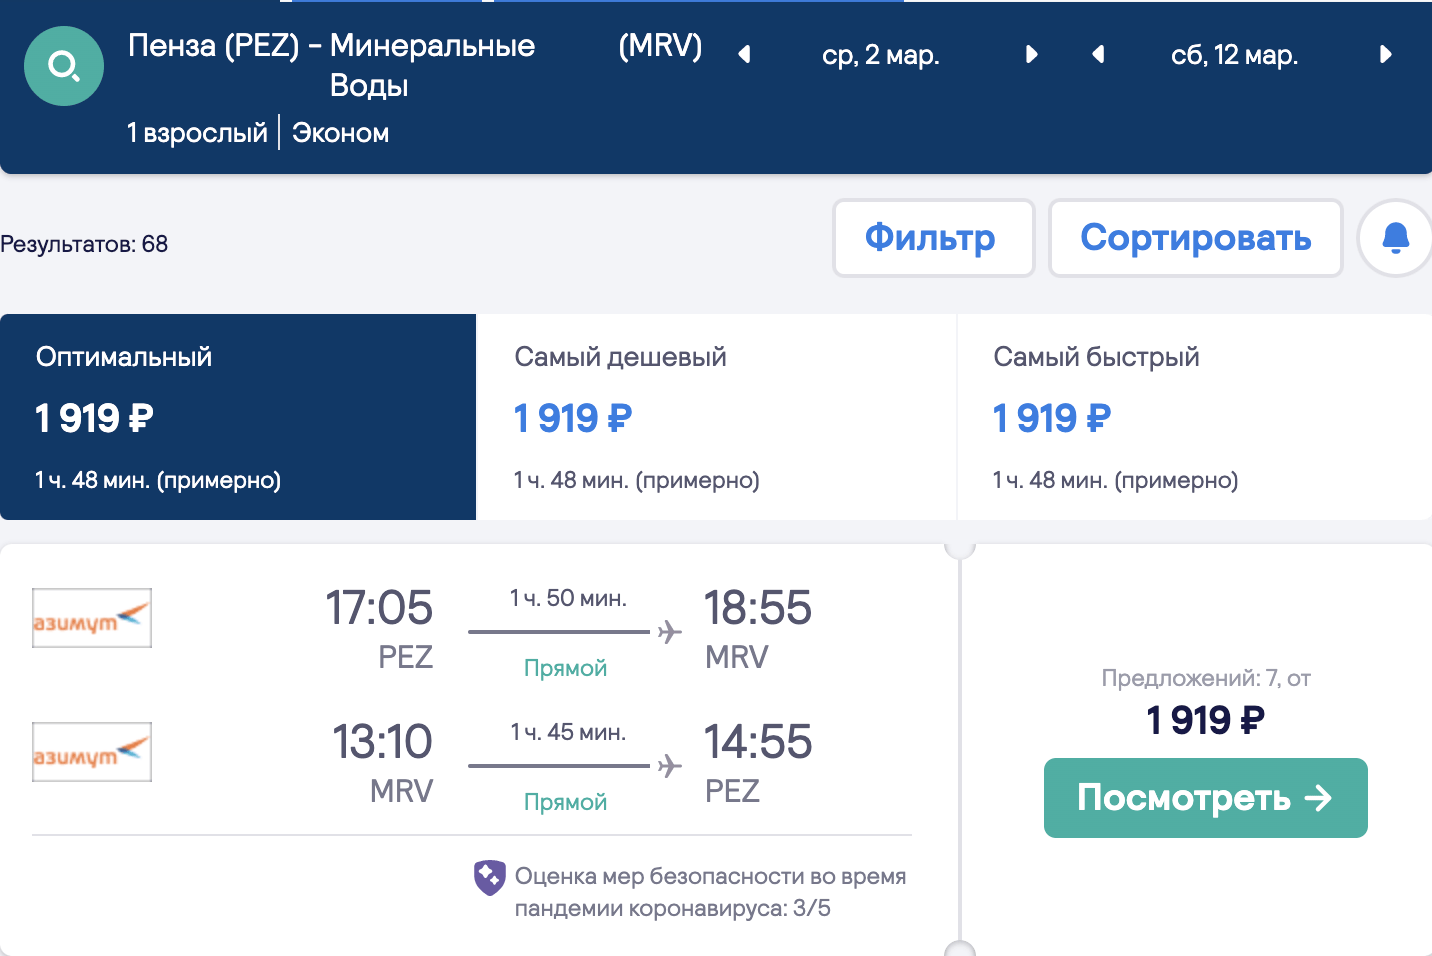 Veliki izbor jeftinih letova iz regija za Krasnodar i Minvody od 1800₽ povratnog putovanja